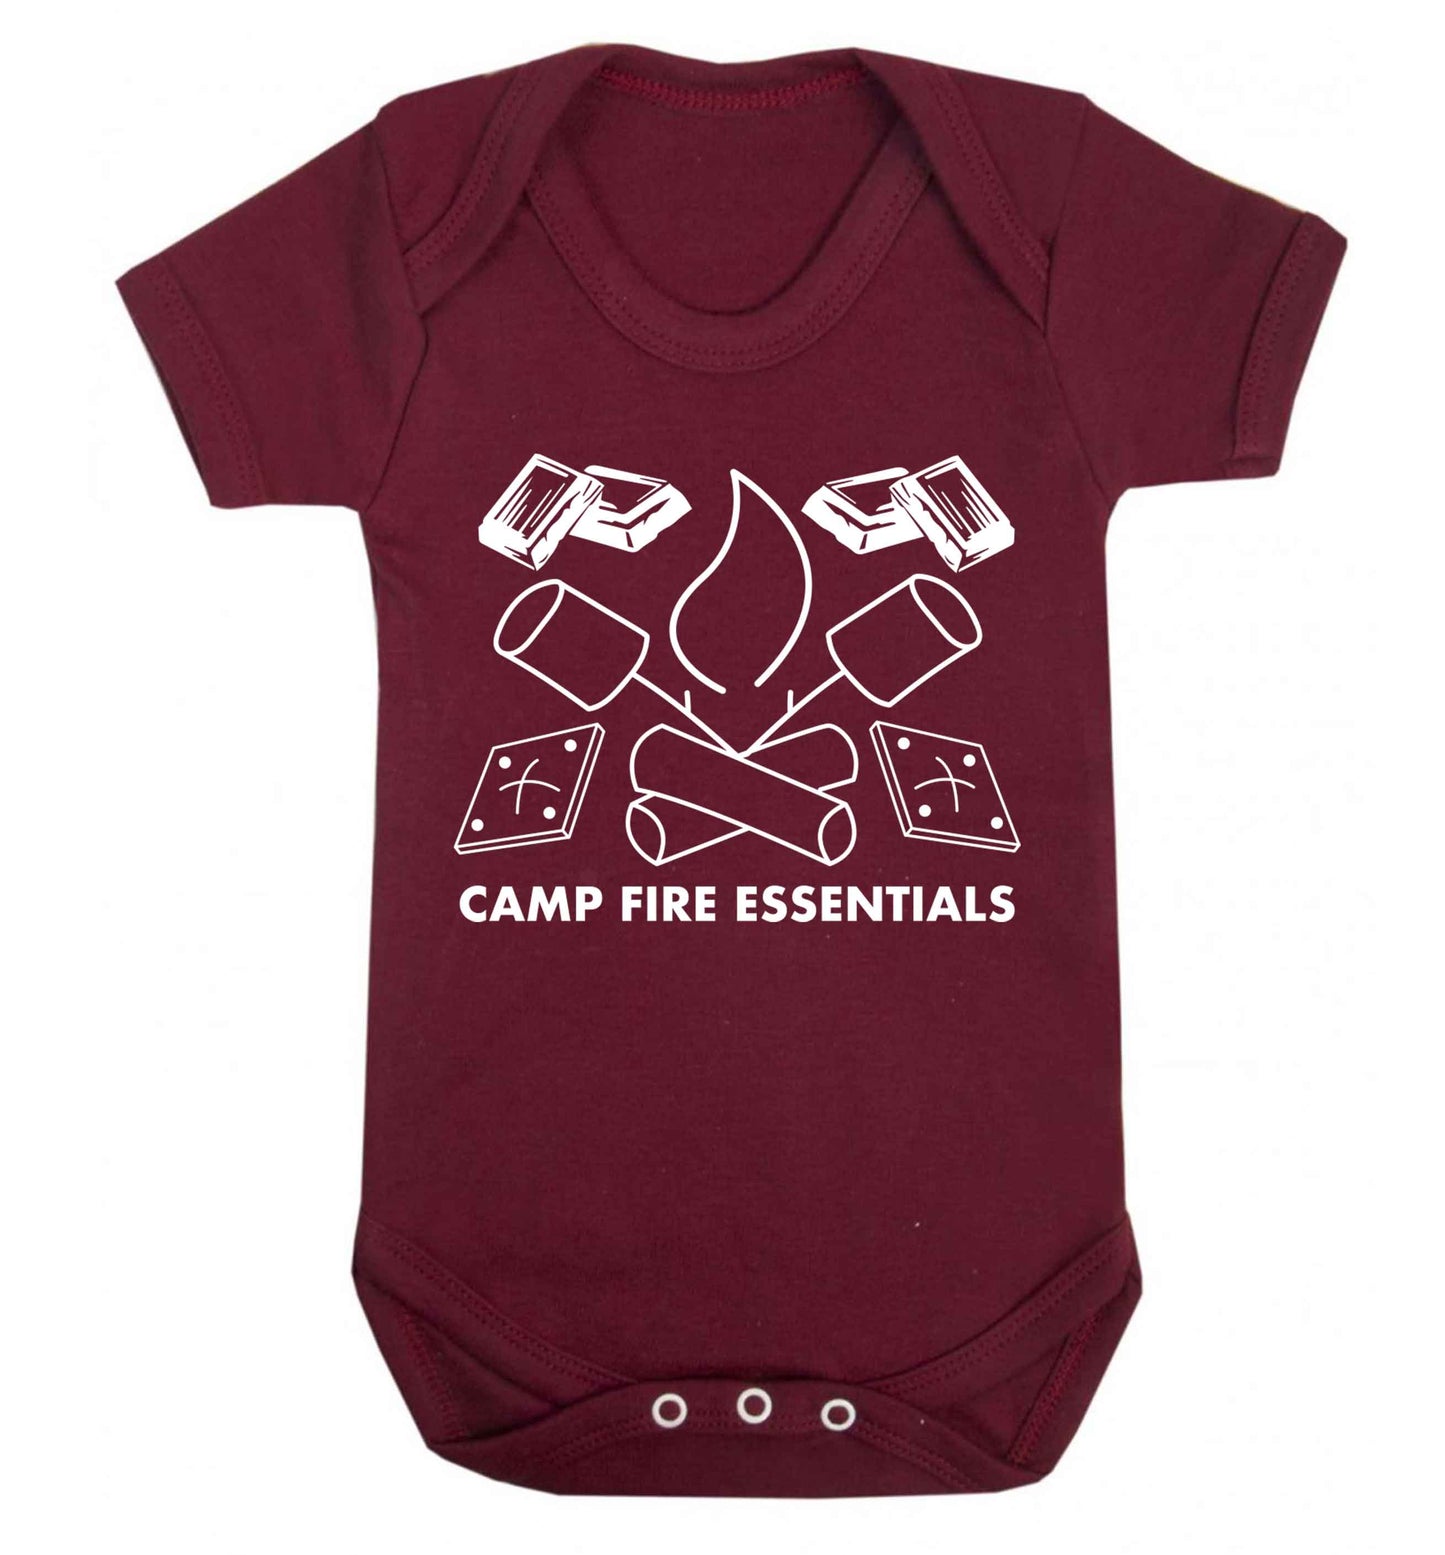 Campfire essentials Baby Vest maroon 18-24 months